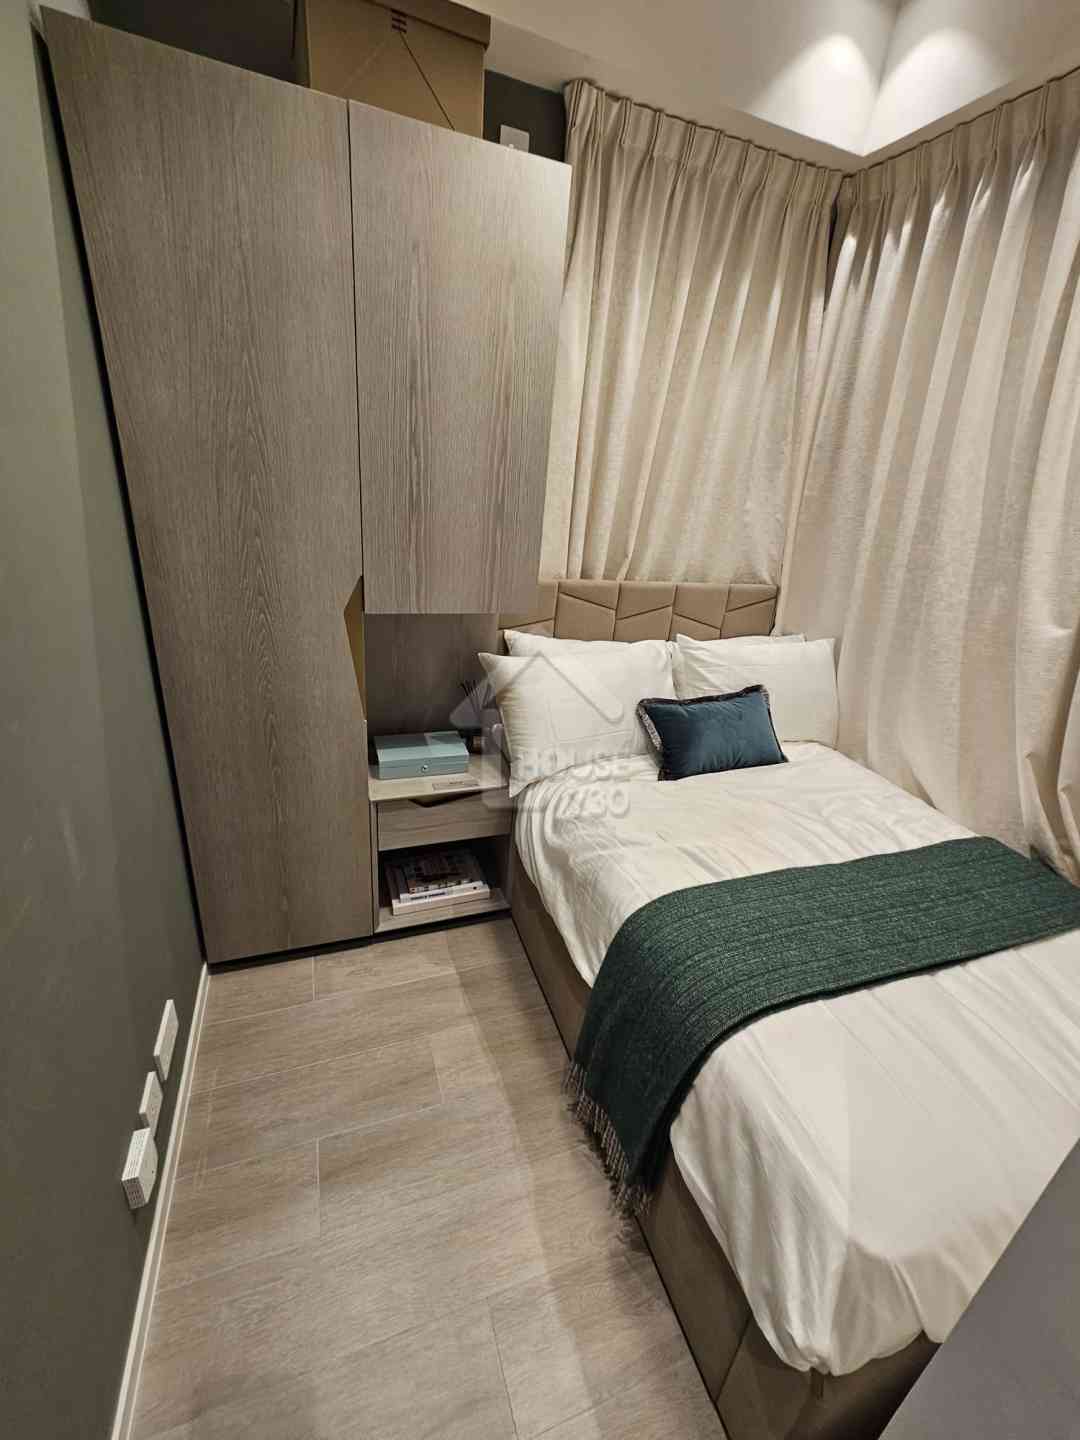 薈鳴經改動示範單位18樓A單位睡房。